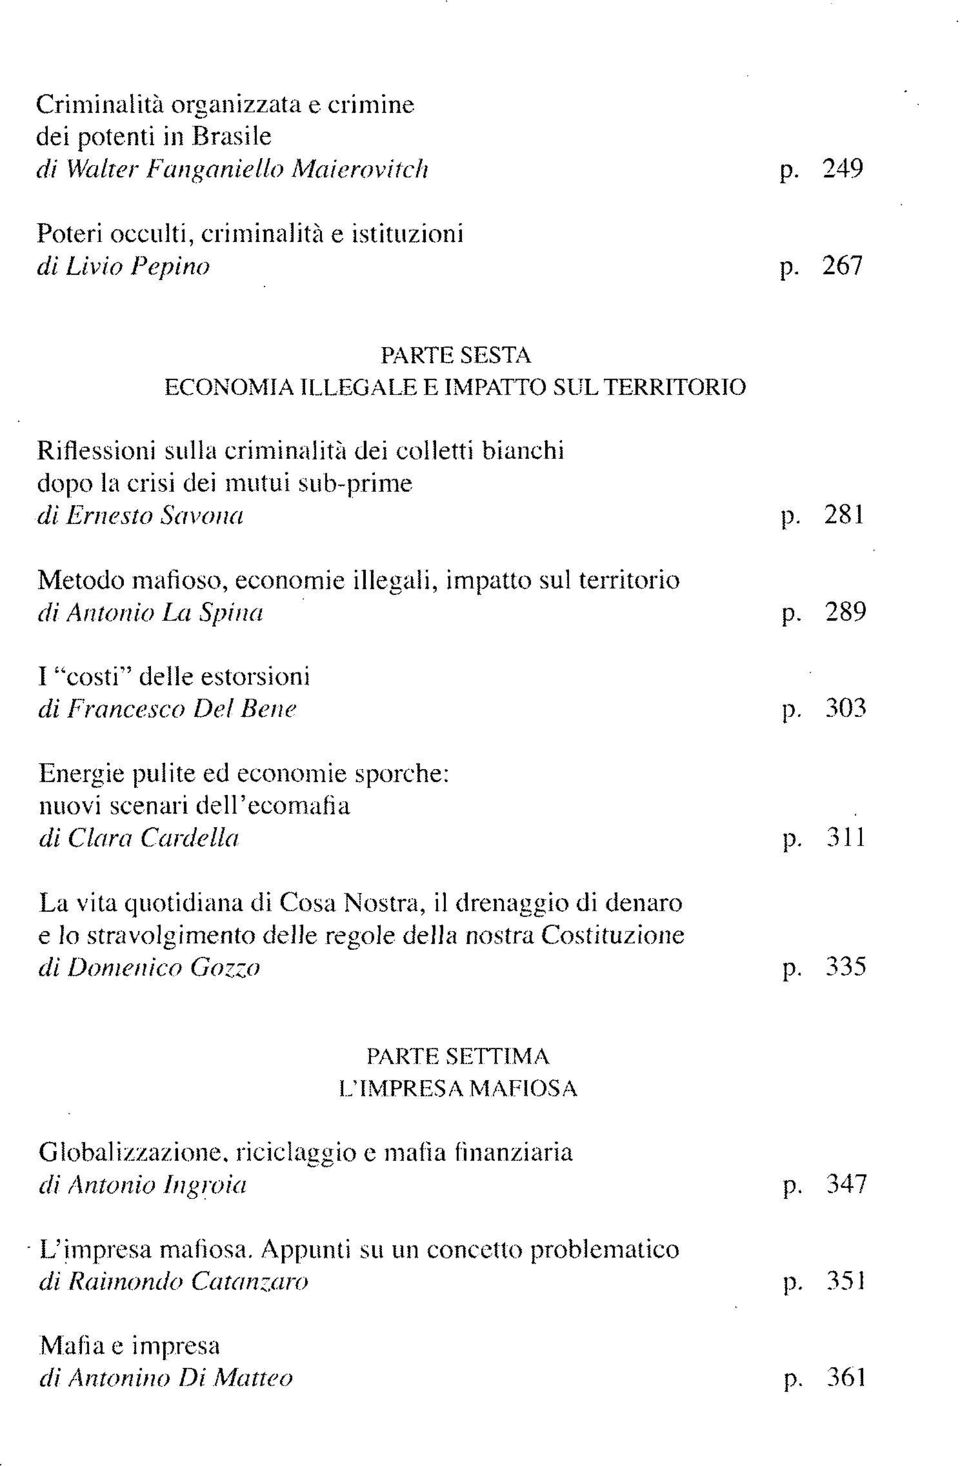 281 Metodo mafioso, economie illegali, impatto sul territorio di Antonio La Spina p. 289 I "costi" delle estorsioni di Francesco Del Bene p.